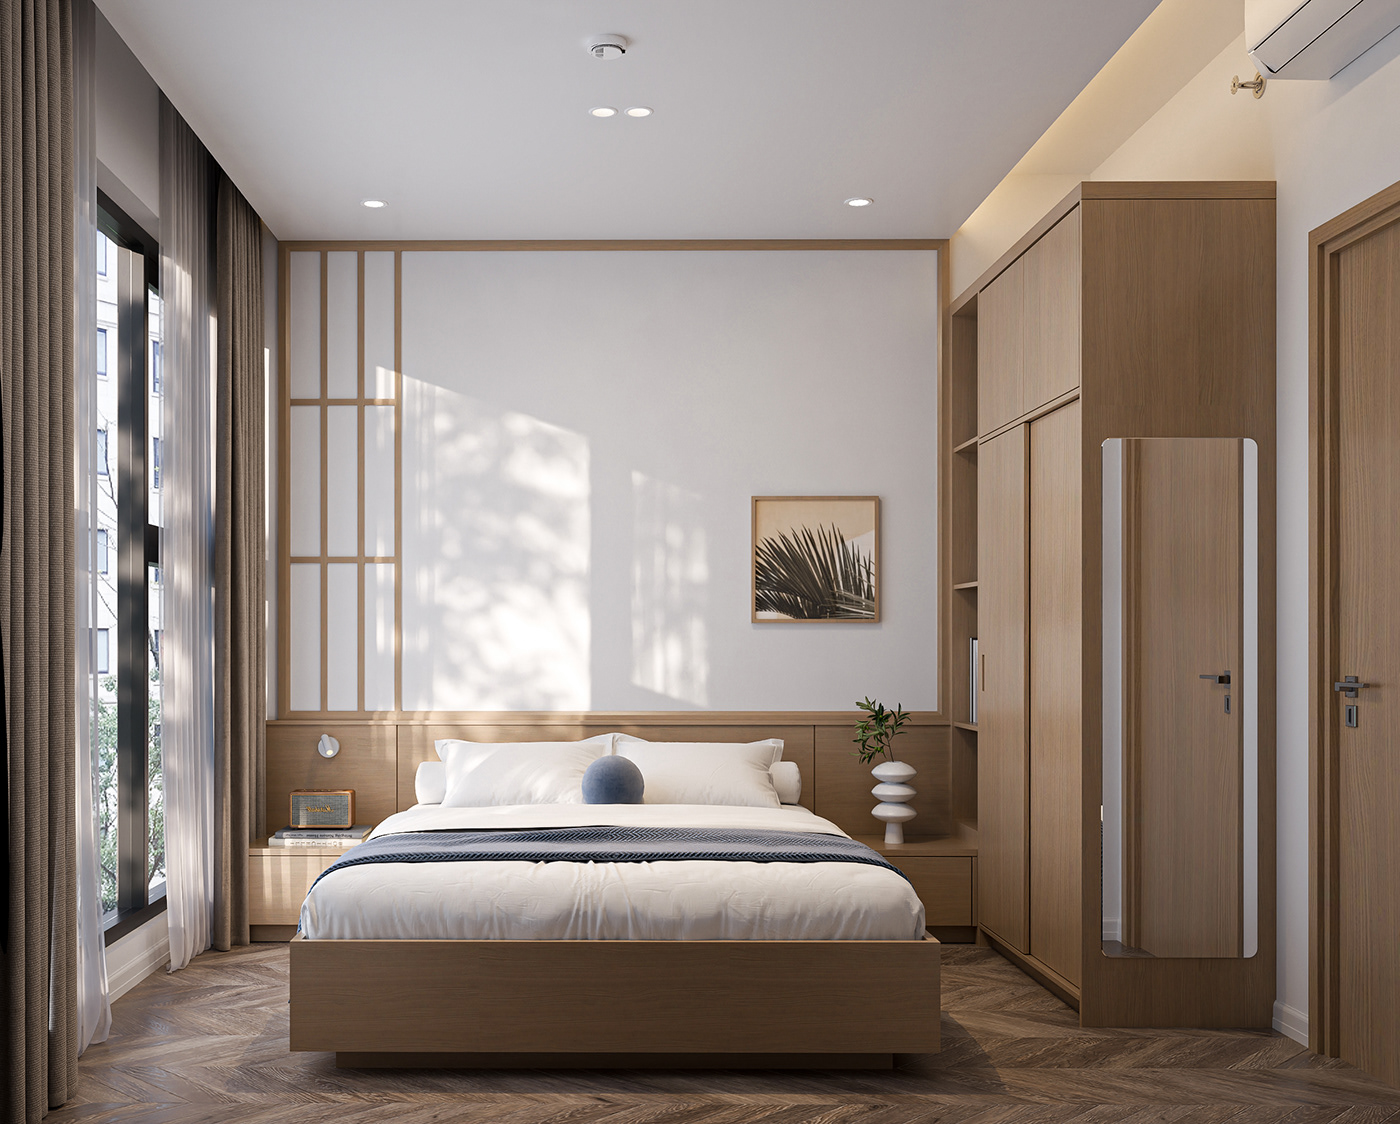 furniture interior design  Render vray visualization archviz 3ds max architecture modern 3D